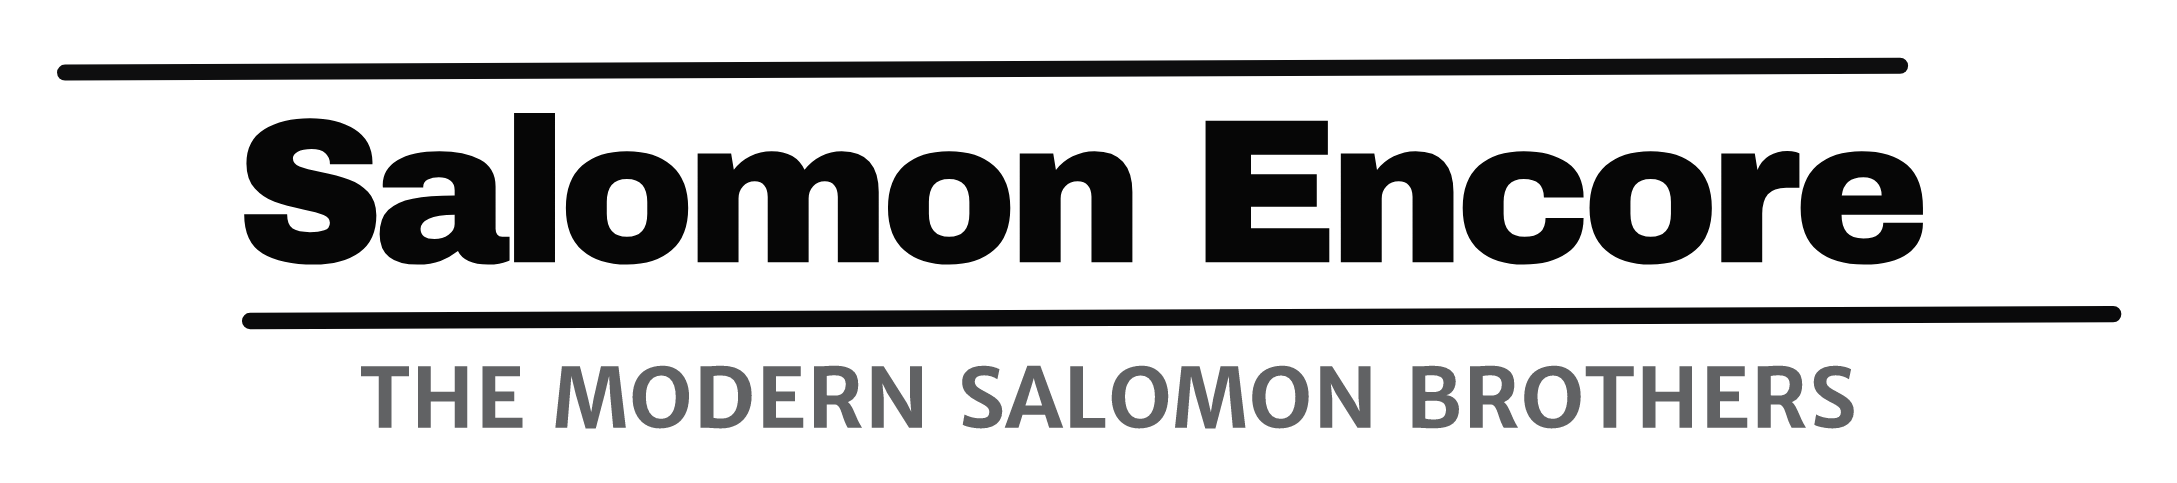 Salomon Encore Logo